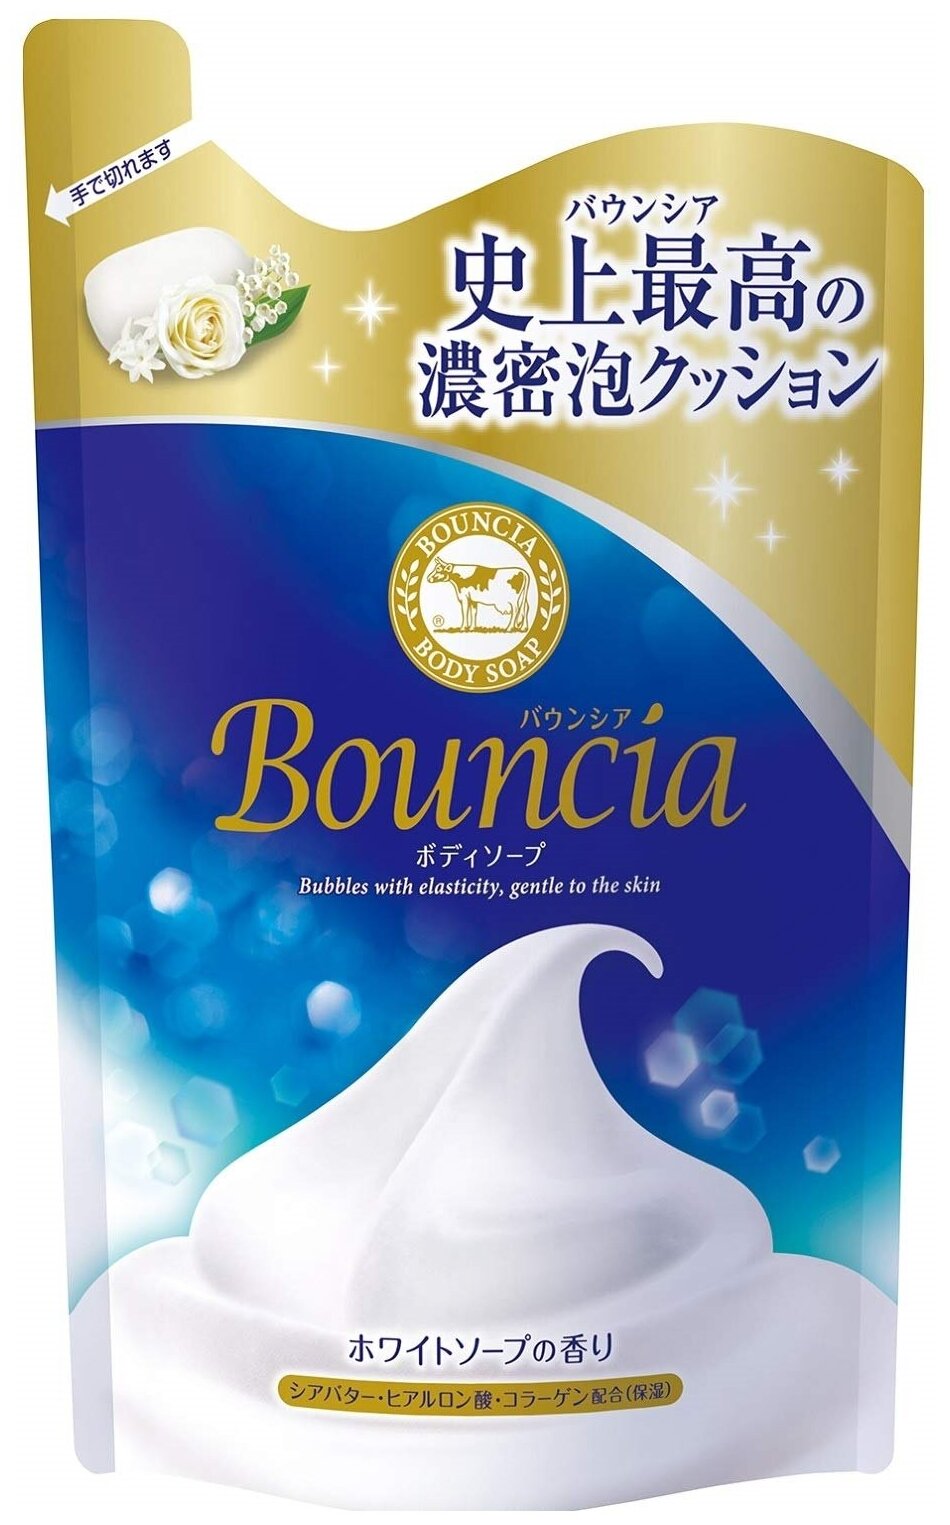 Cow Brand Мыло жидкое Bouncia Увлажняющее со сливками, 360 мл